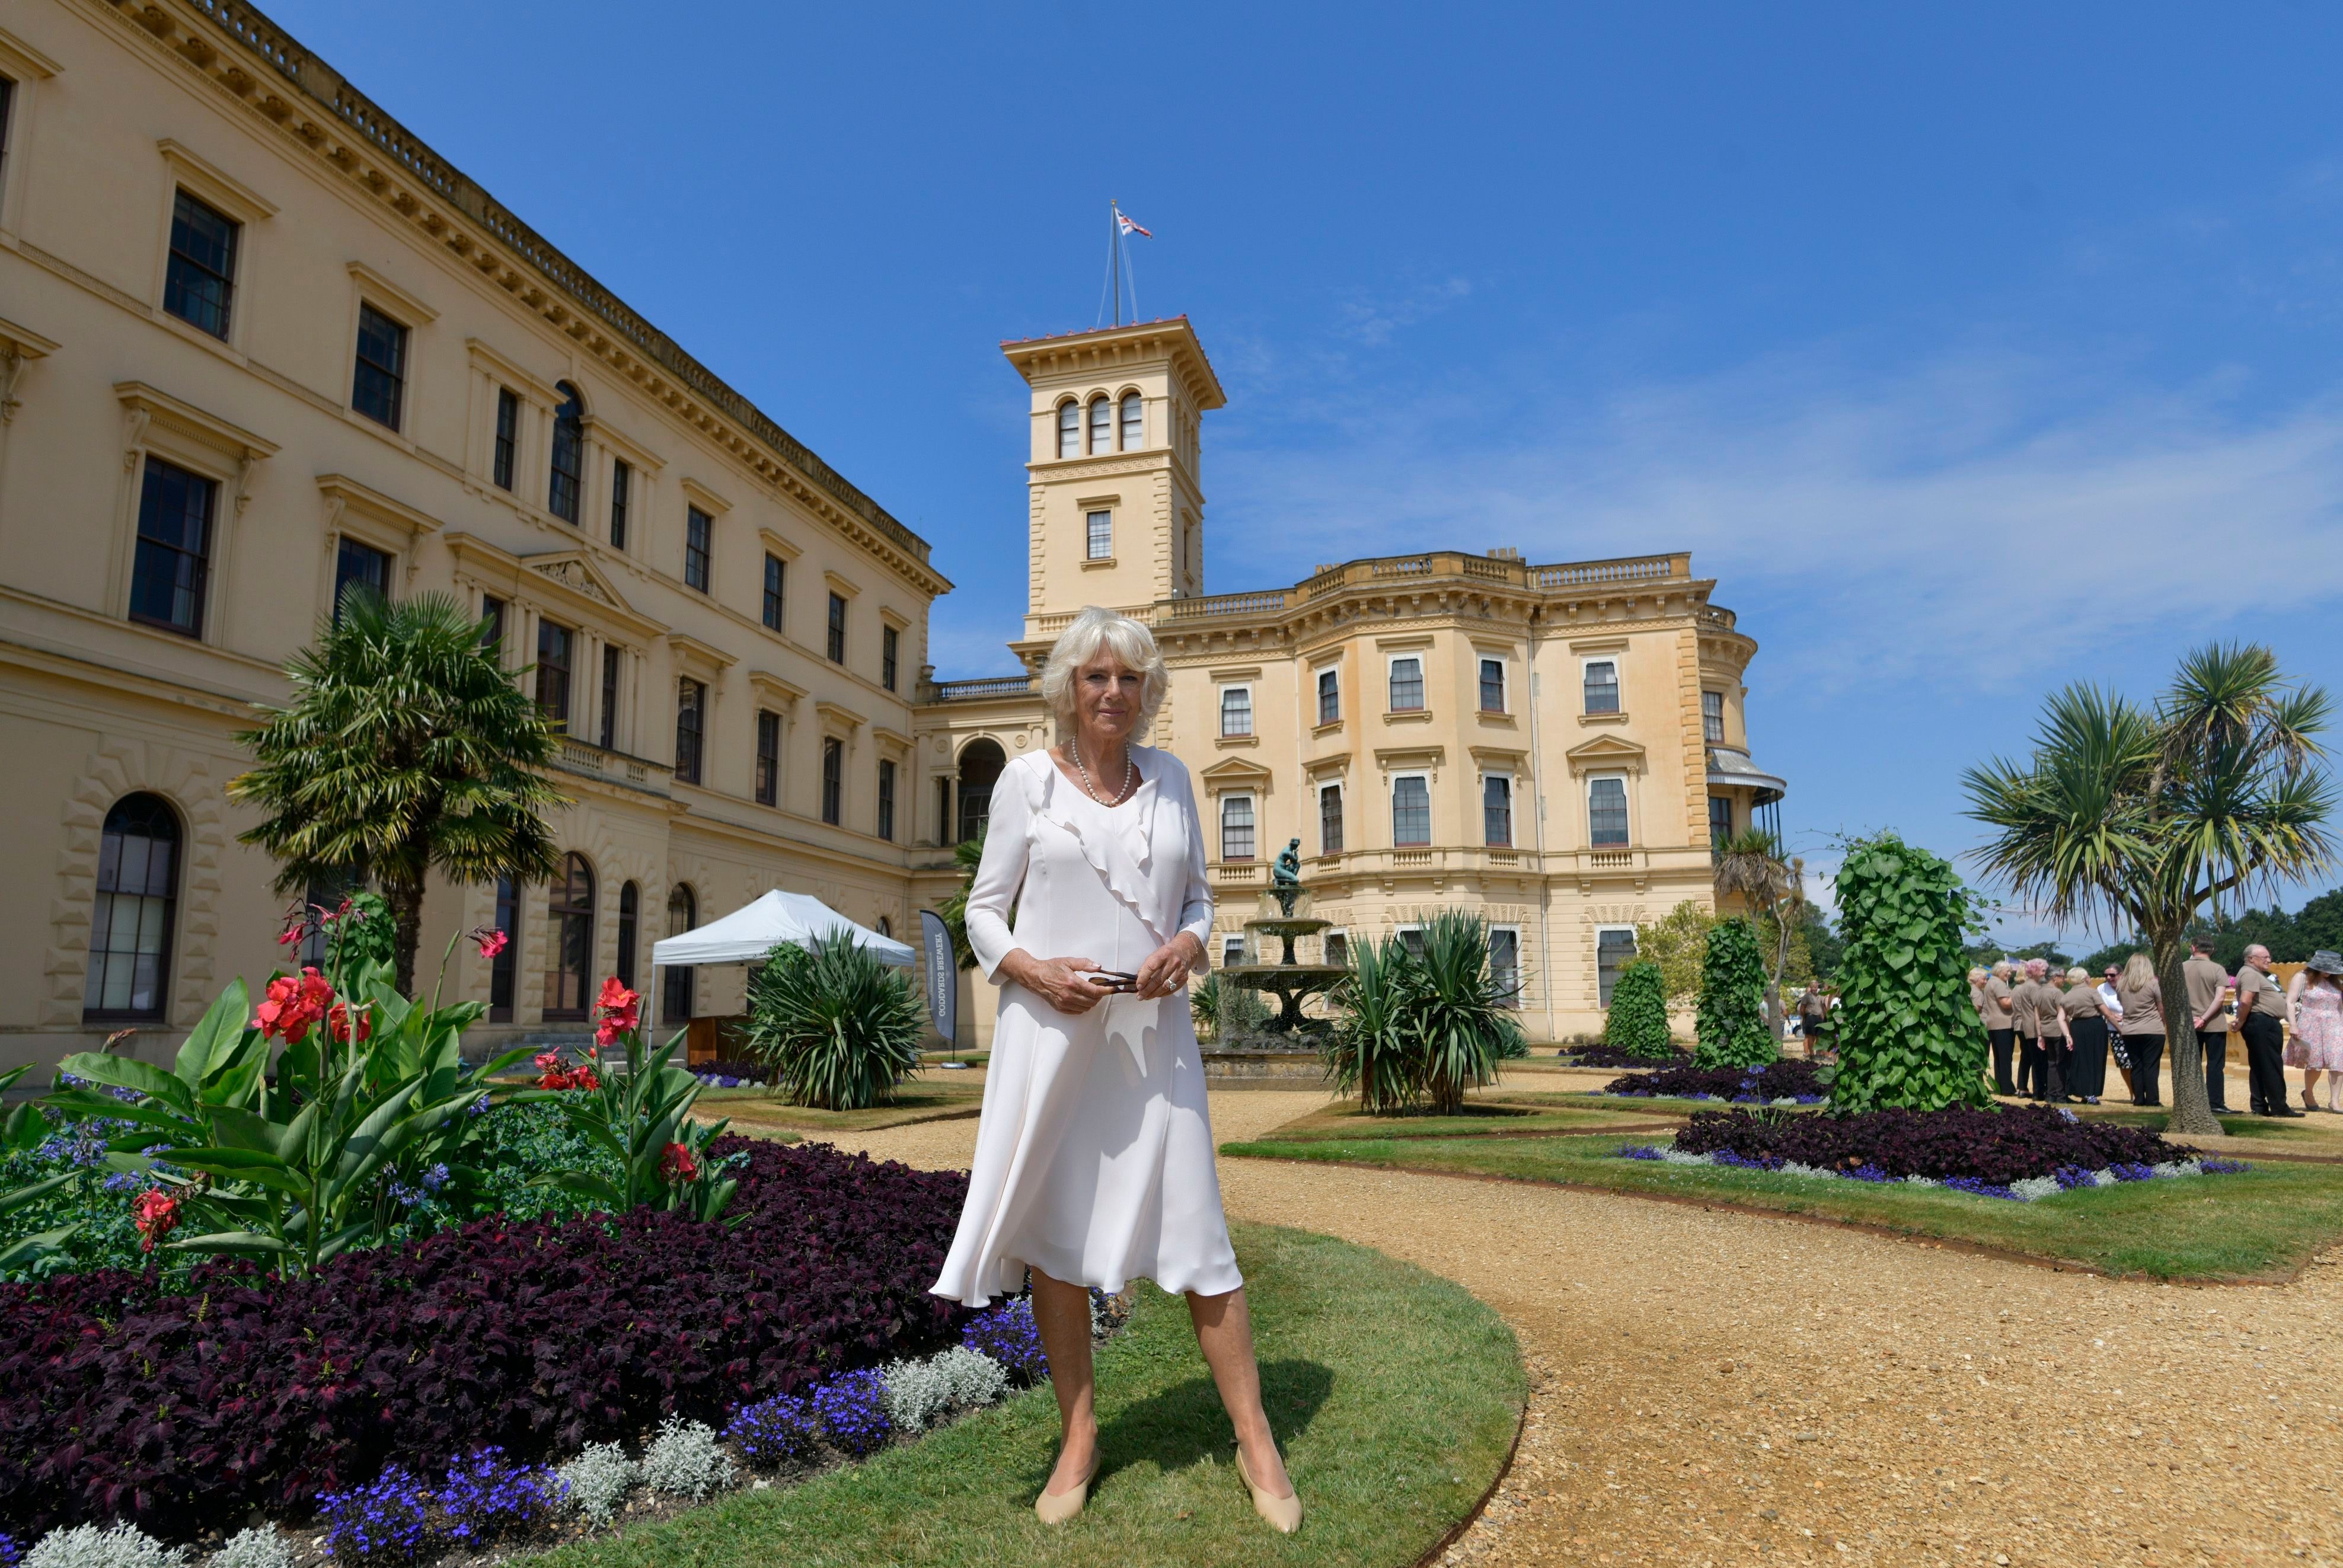 Königin Camilla vor dem Uhrturm im italienischen Stil bei einem Besuch im Jahr 2018